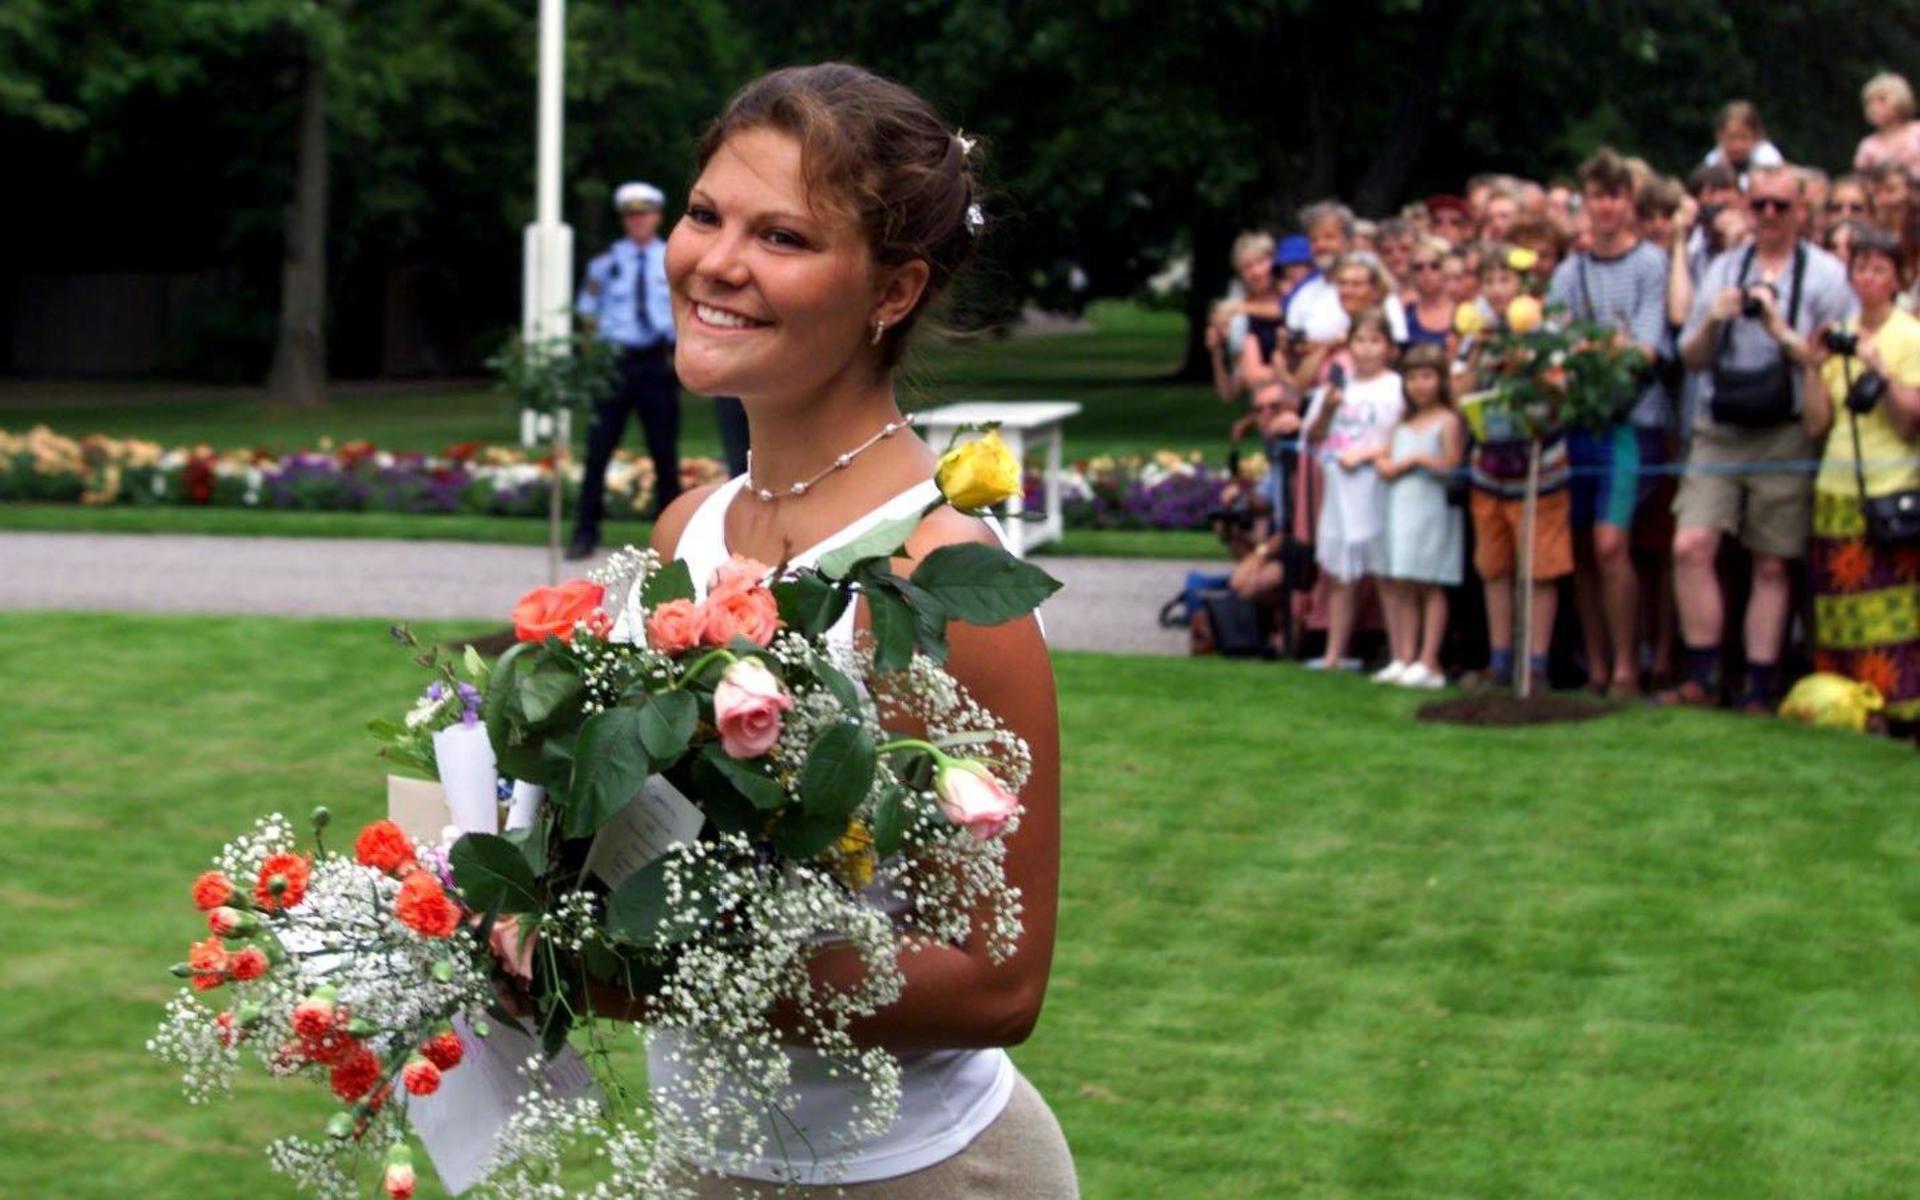 1999 firade Kronprinsessan Victoria sin 22-årsdag traditionsenligt utanför slottet Solliden på Öland. En stor mängd människor hade tagit sig till Solliden för att fira henne.